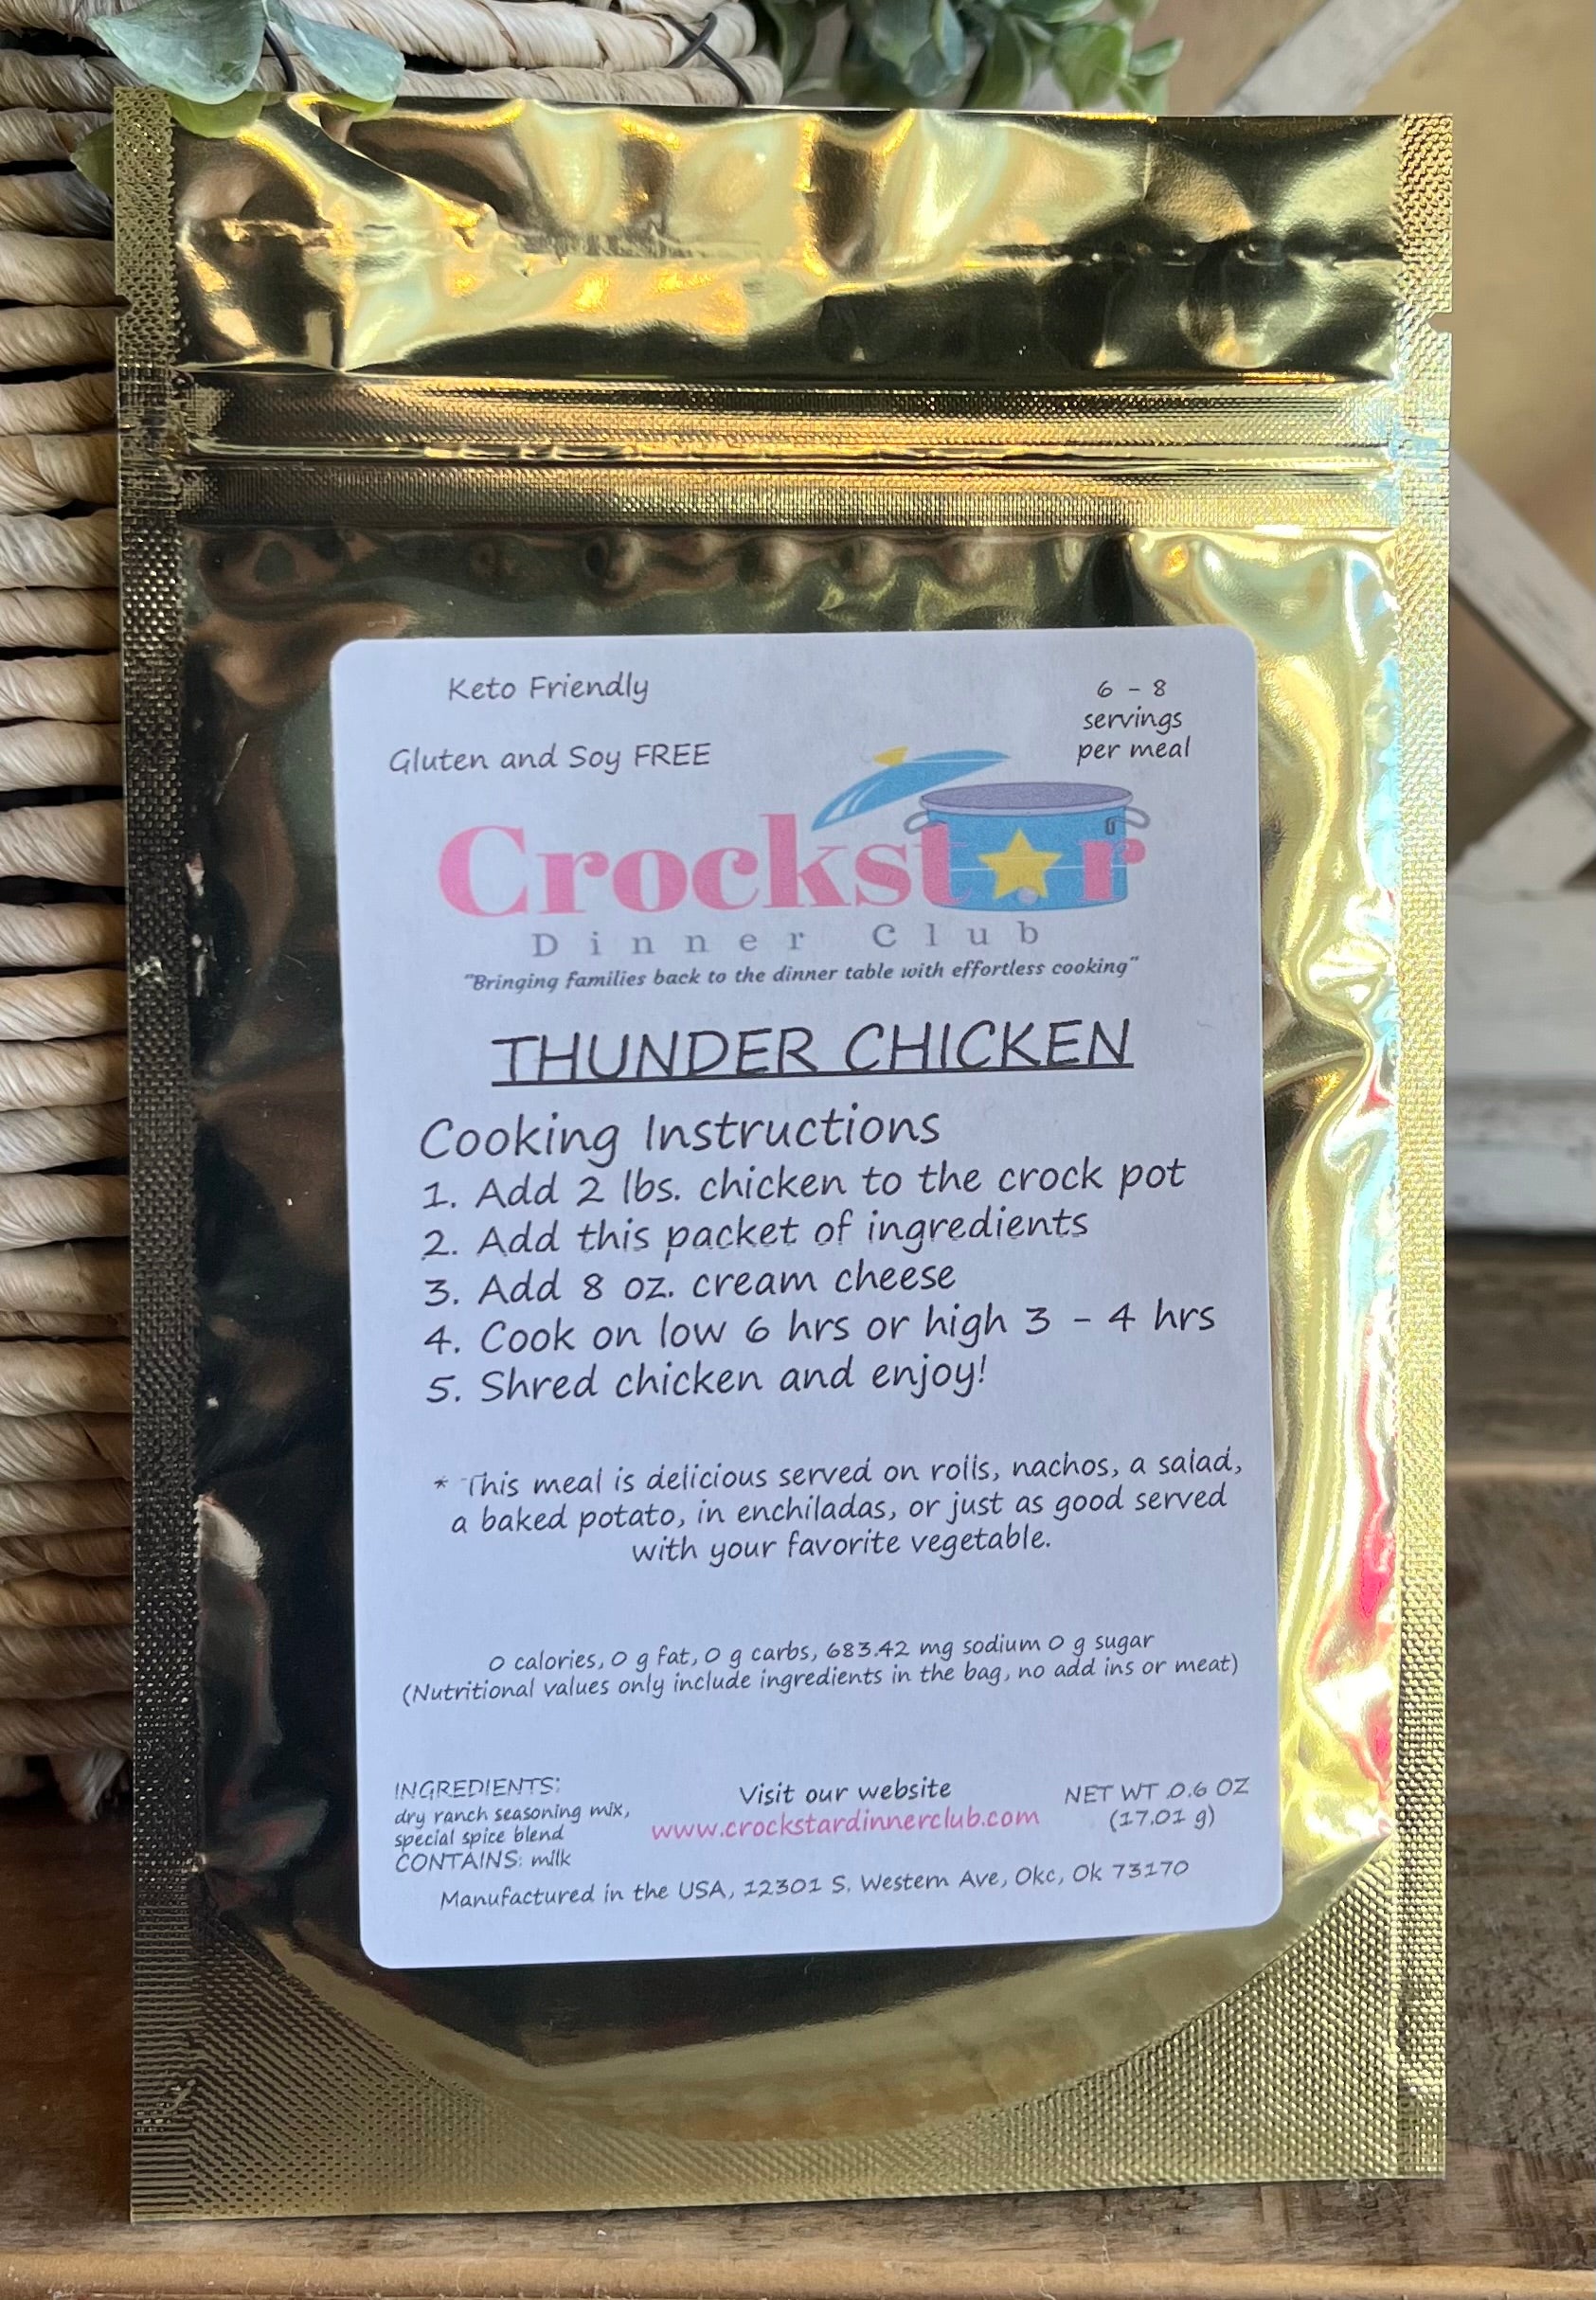 Thunder Chicken - Crockstar Dinner Club